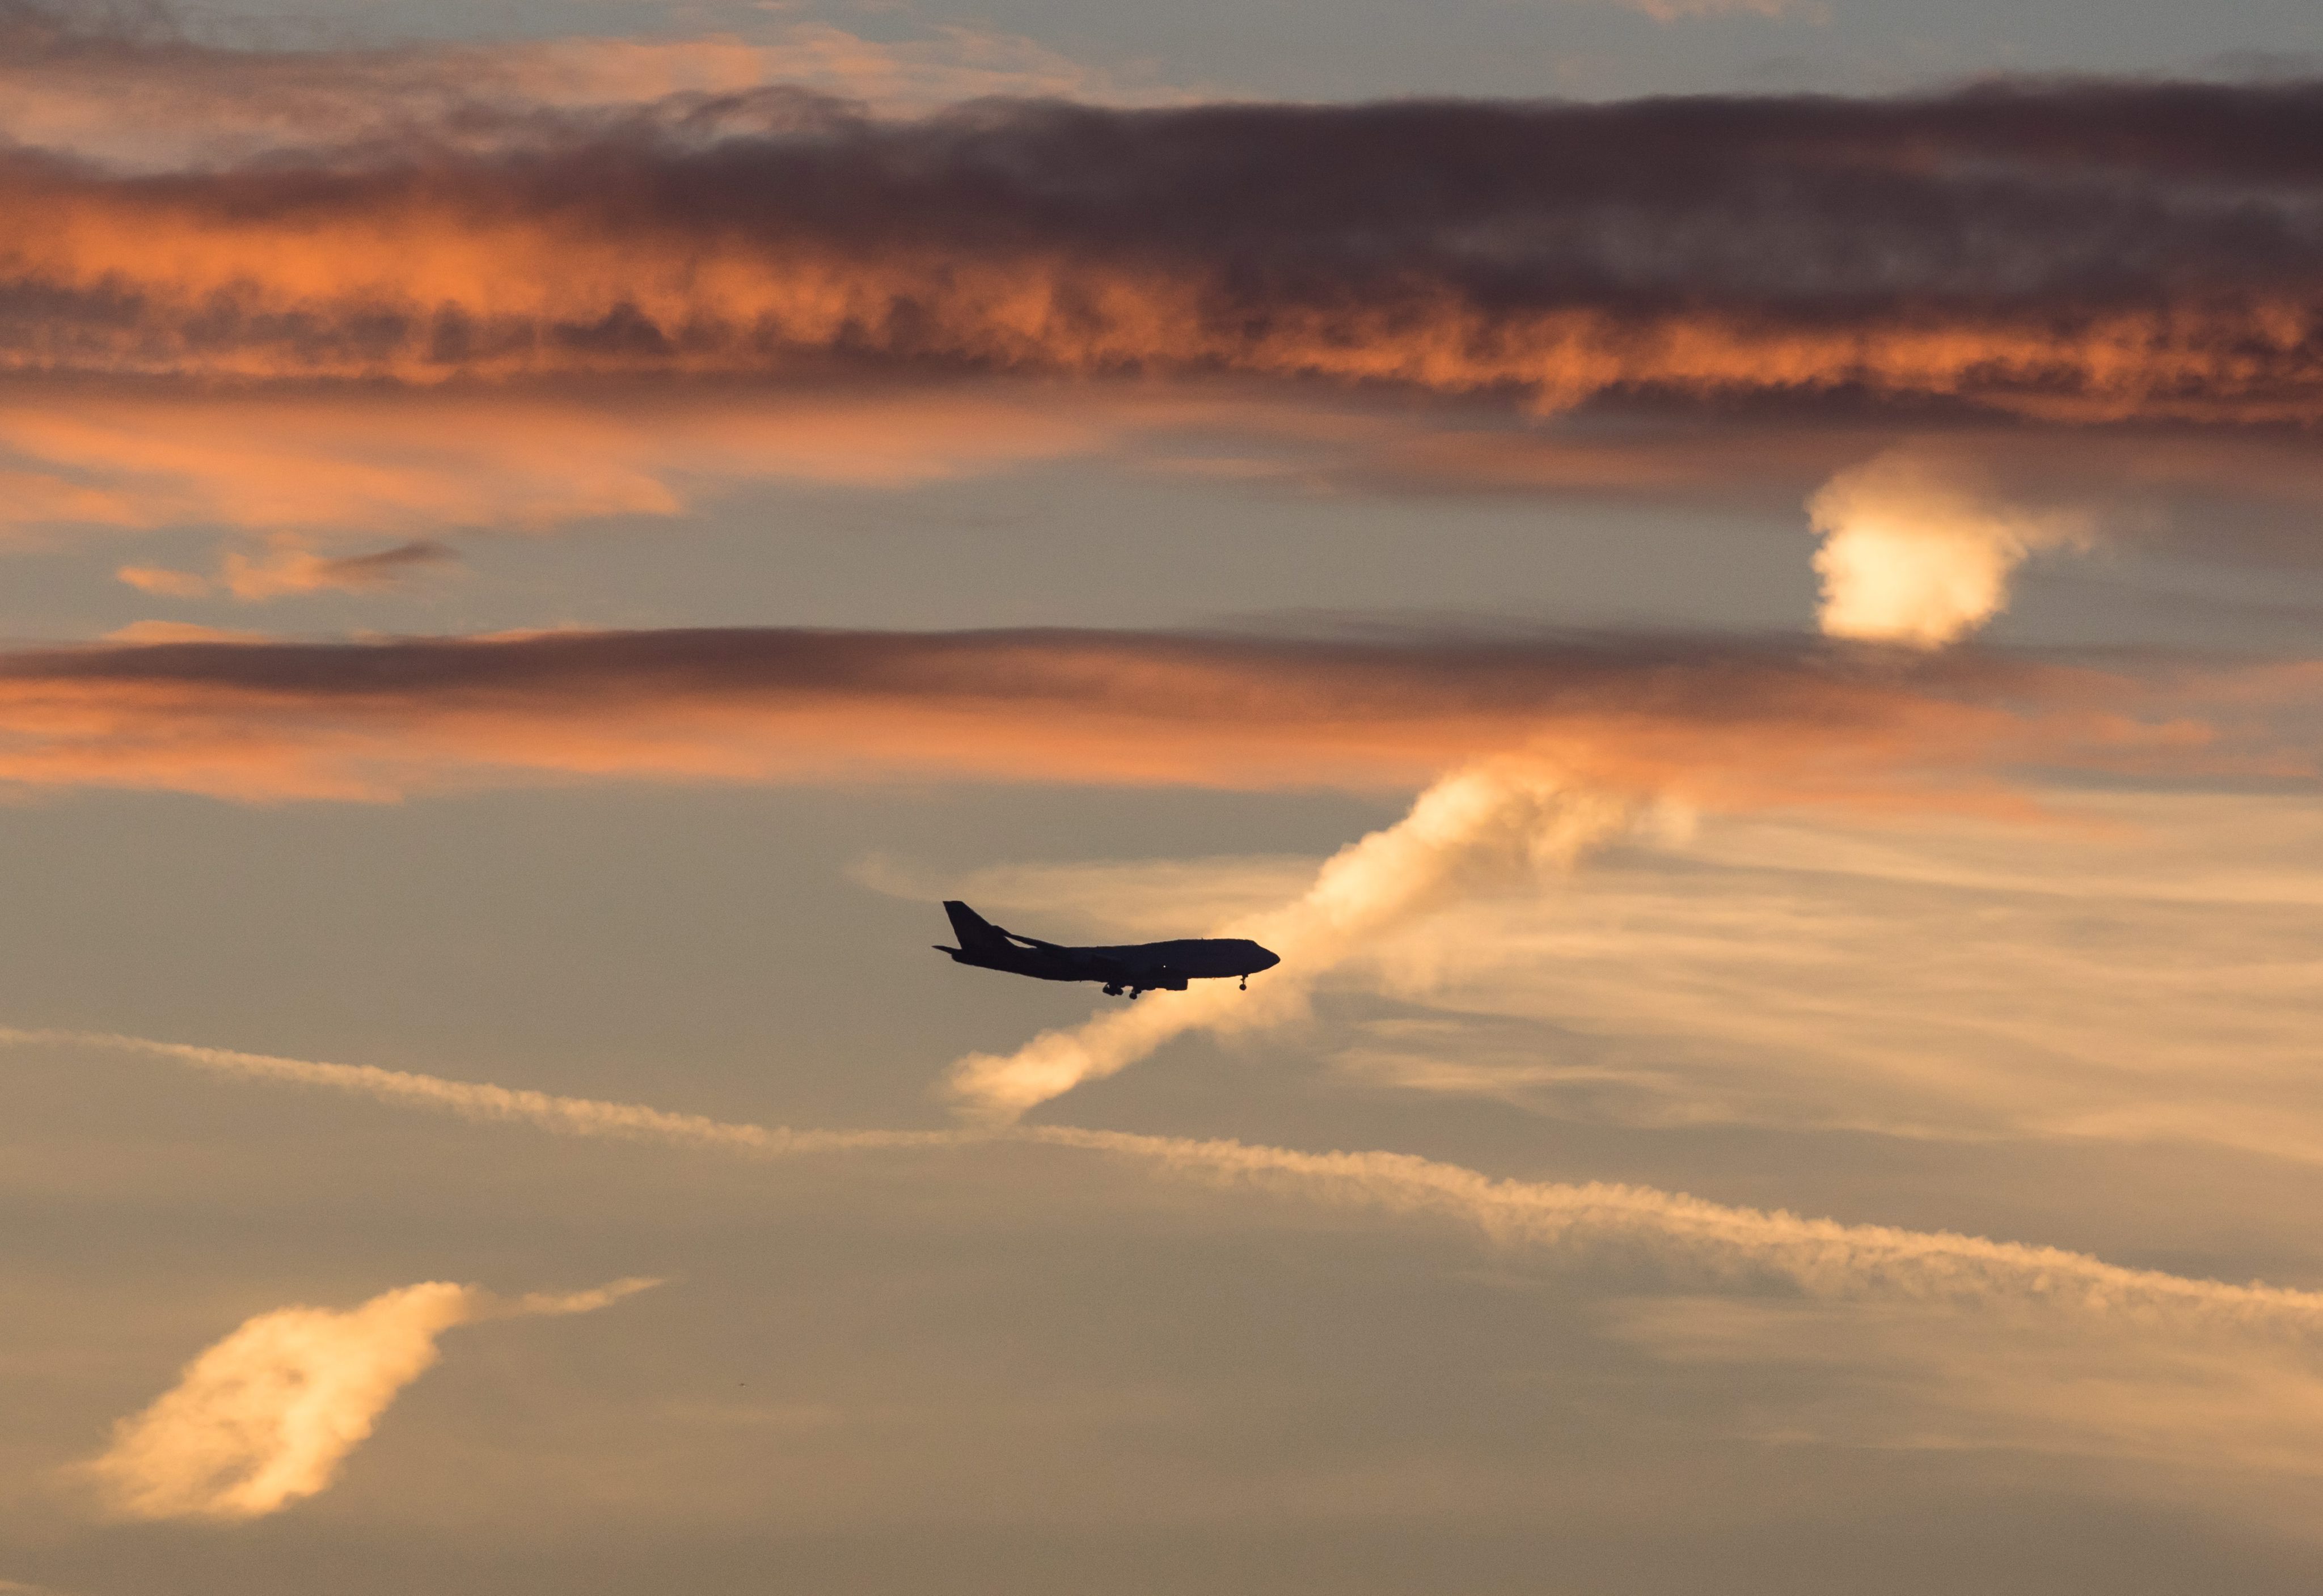 Επίτροπος Μπουλτς: Νέοι κανόνες για τις αερομεταφορές σε Ελλάδα και Ευρώπη